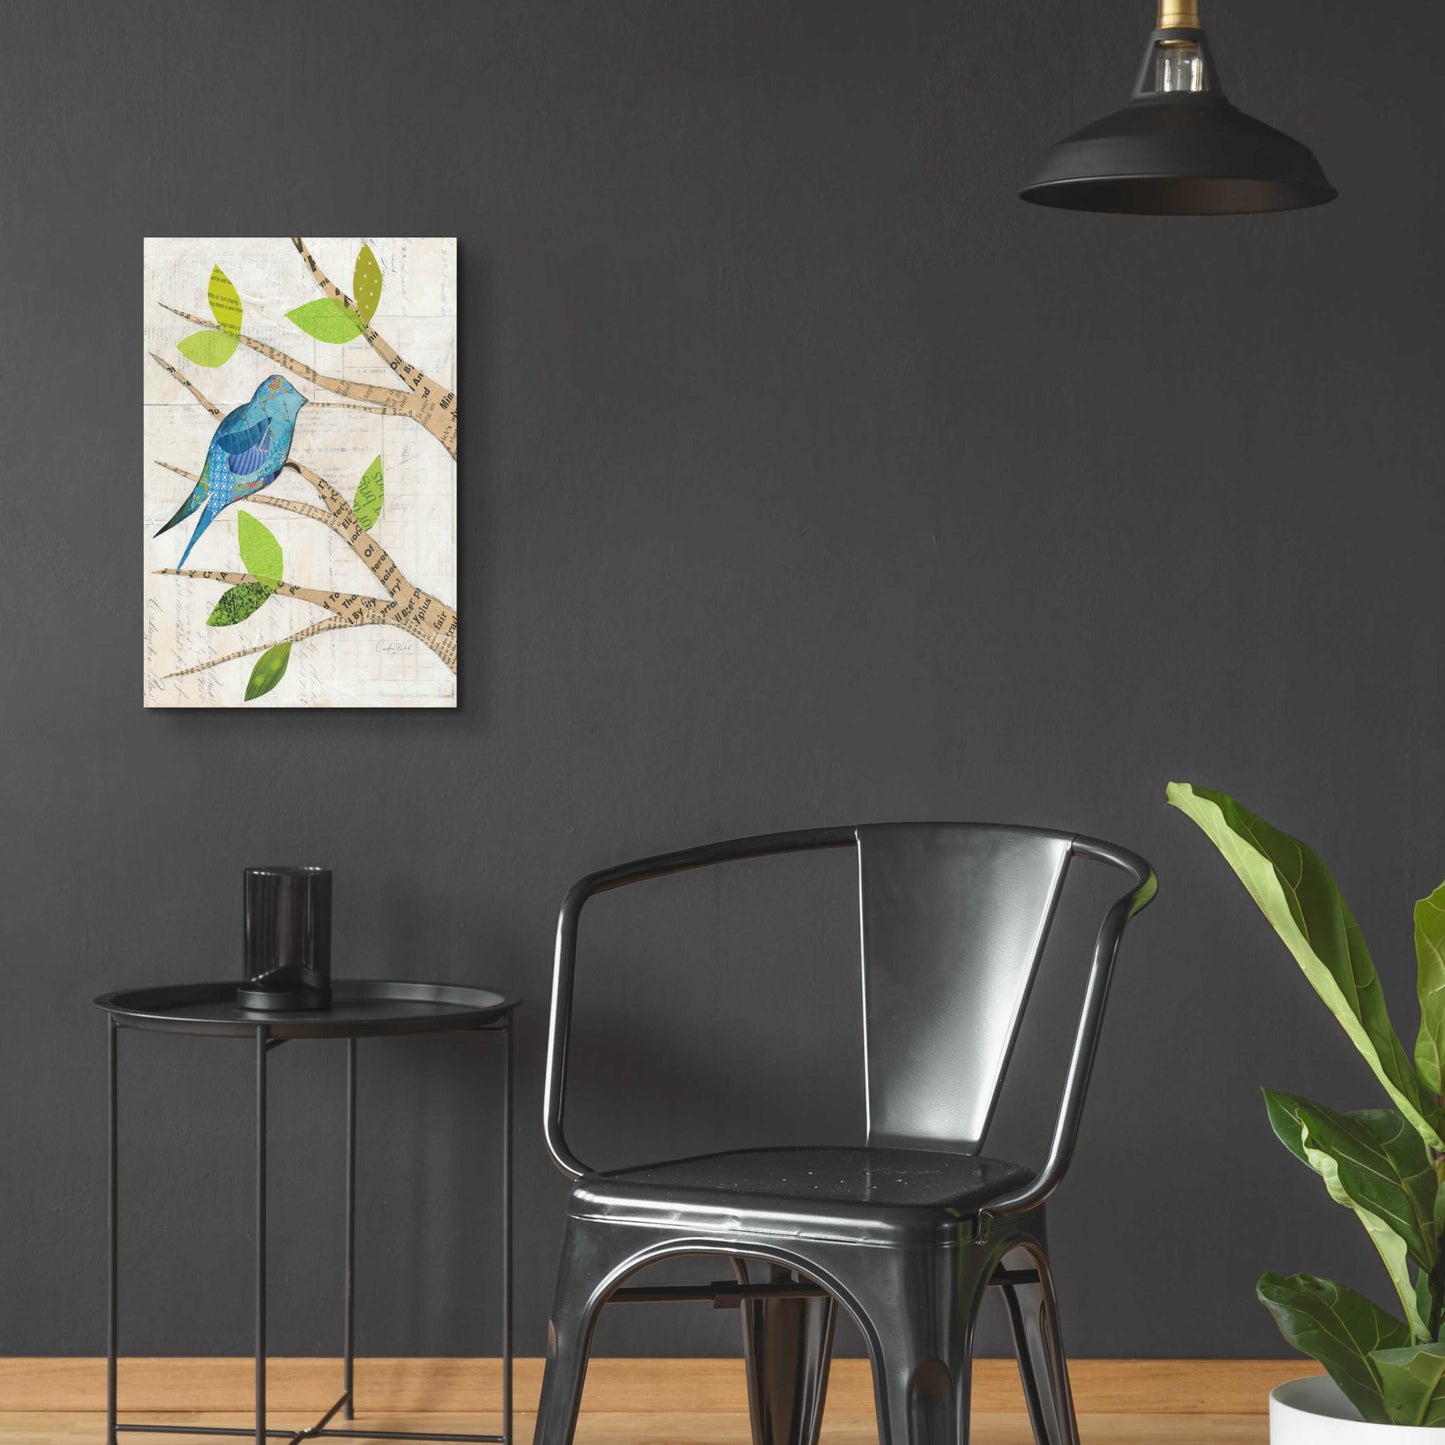 Epic Art 'Birds in Spring I' by Courtney Prahl, Acrylic Glass Wall Art,16x24